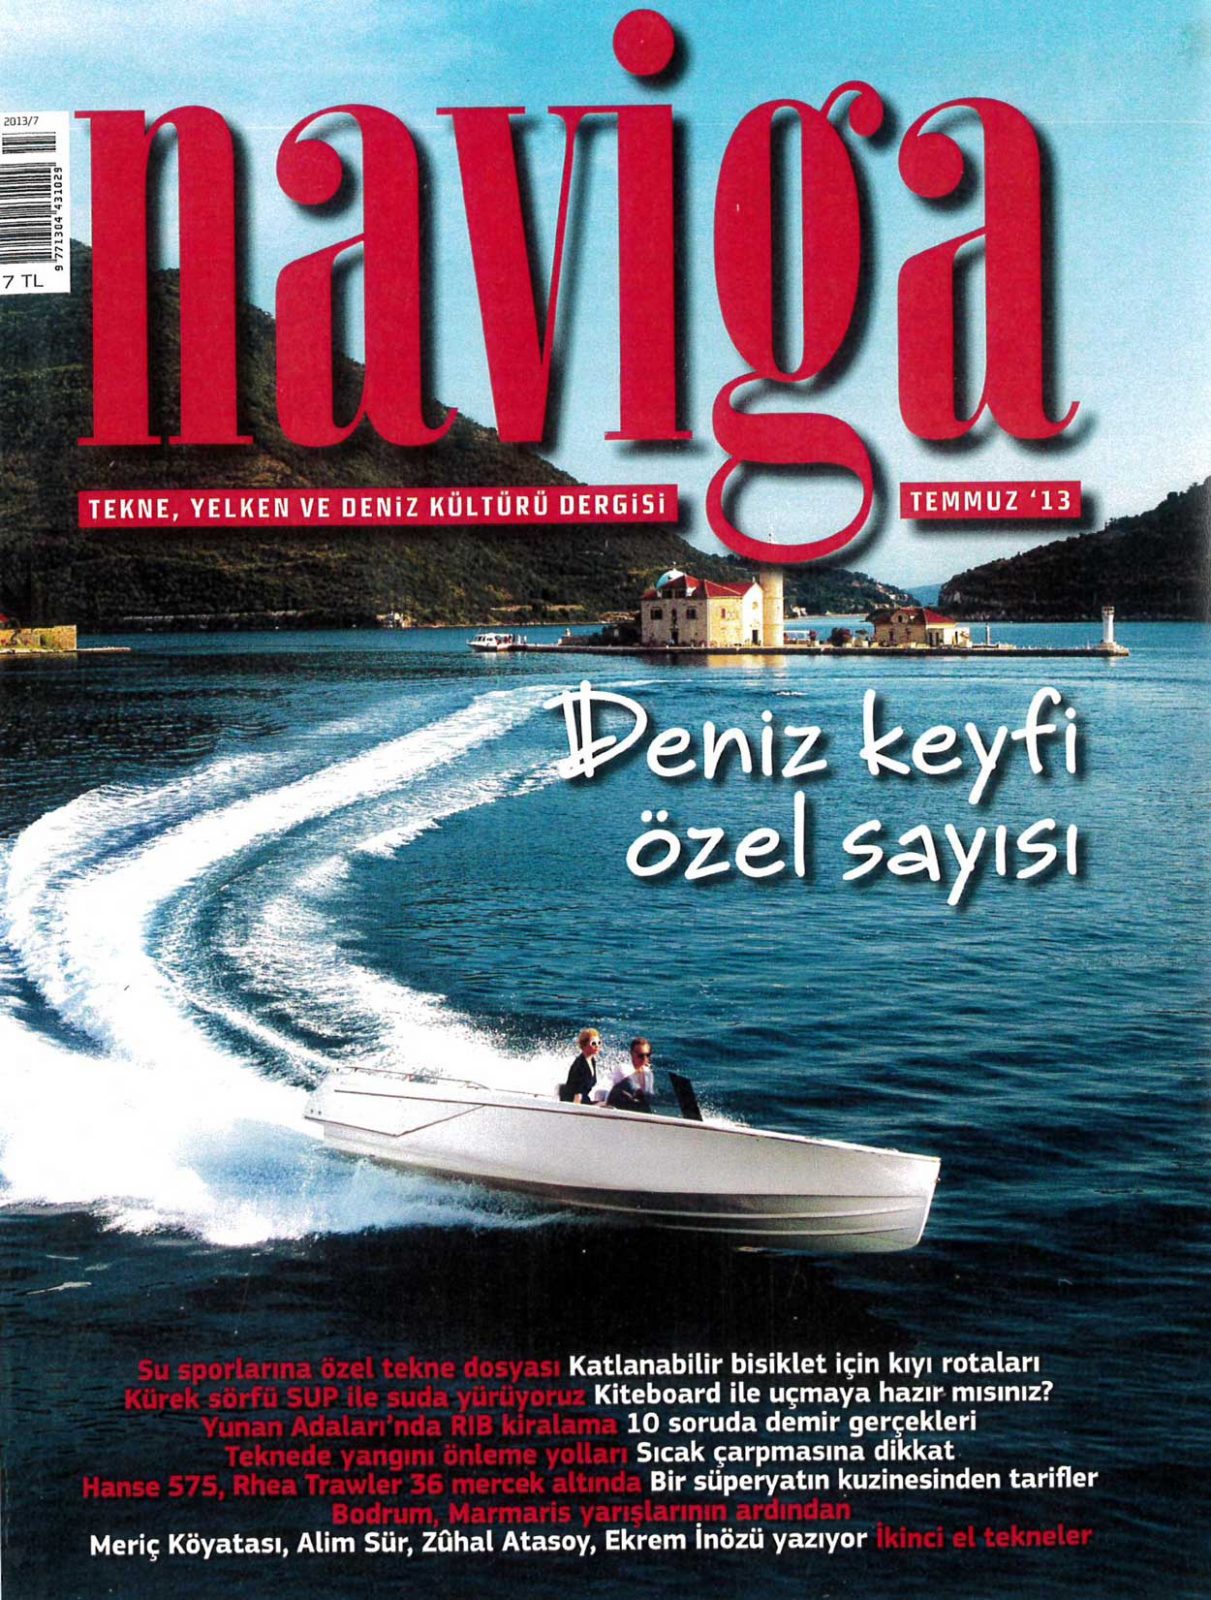 Naviga - Temmuz 2013